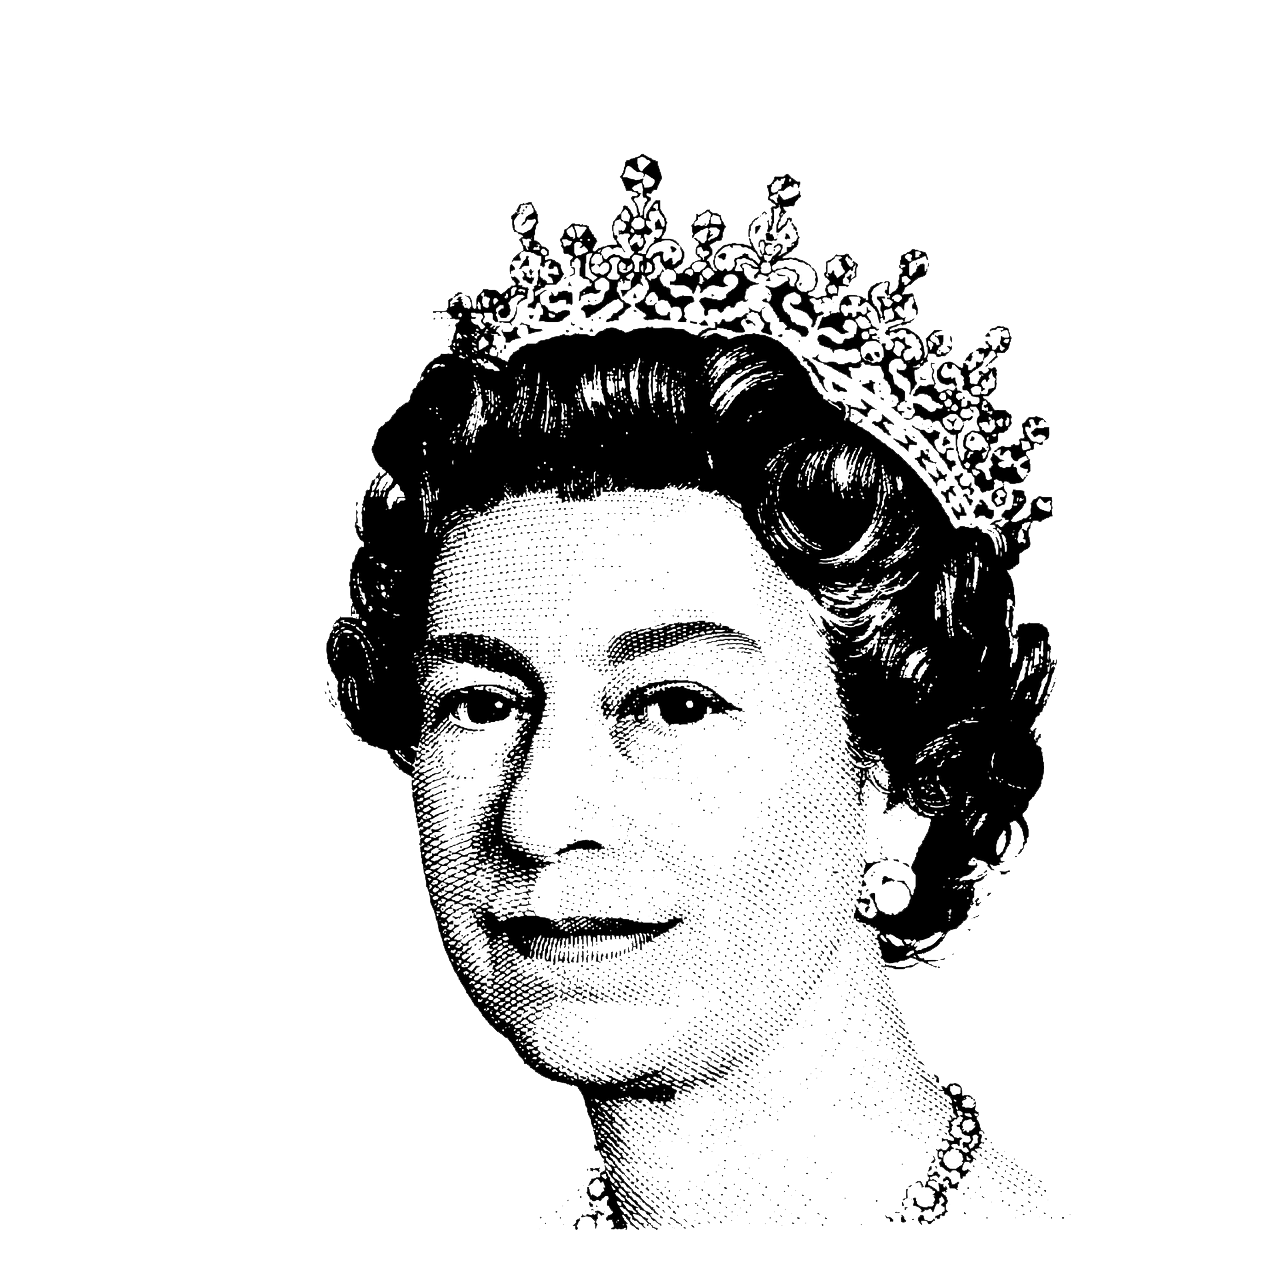 نقاشی Full HD تماشایی از ملکه الیزابت پادشاه انگلستان 